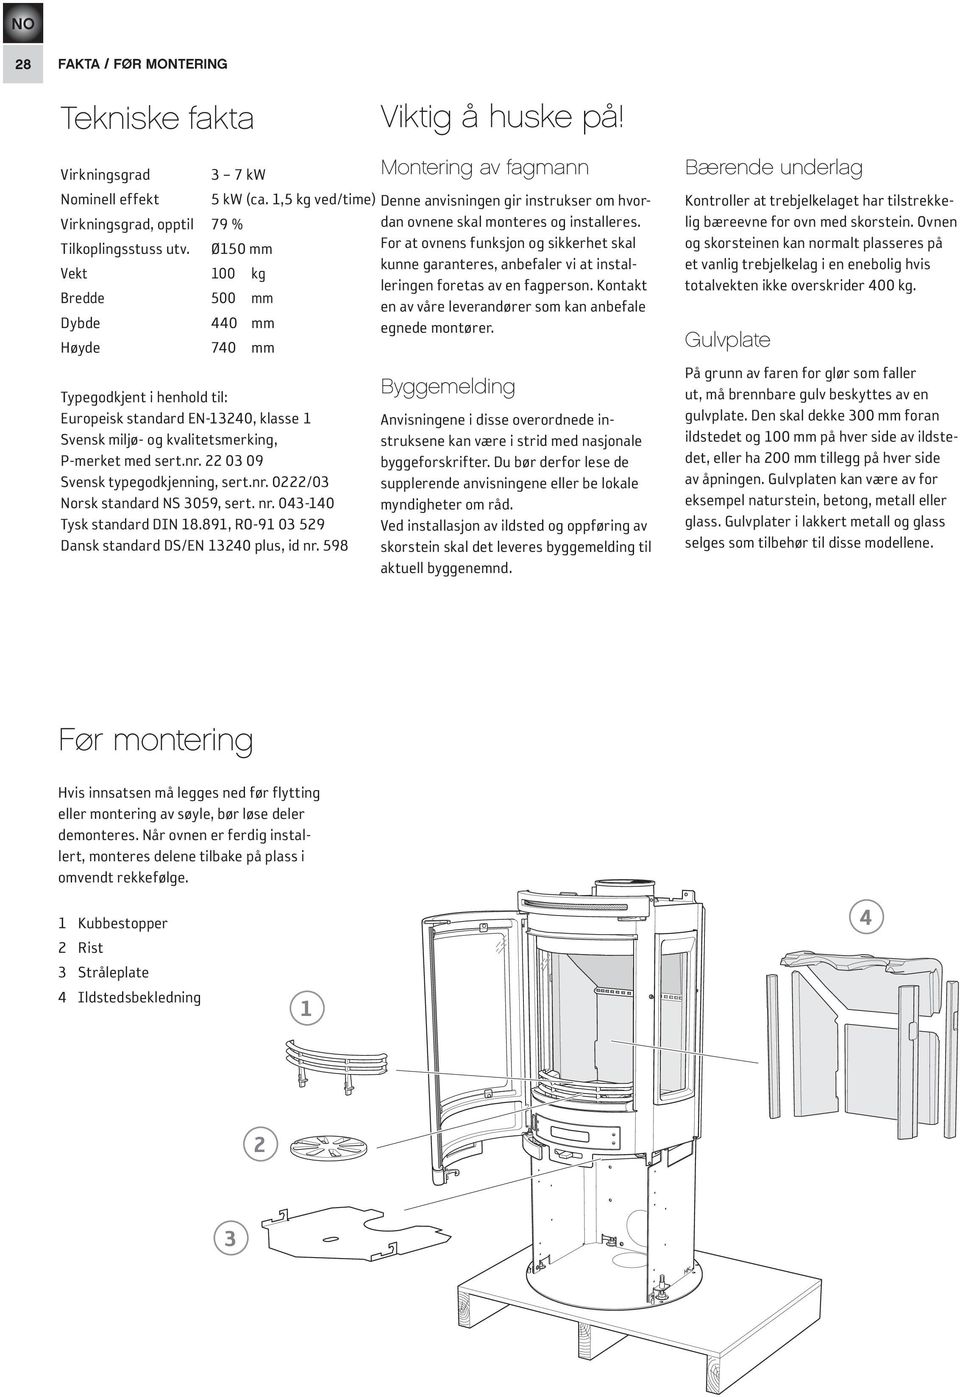 Ø150 mm For at ovnens funksjon og sikkerhet skal kunne garanteres, anbefaler vi at installeringen foretas av en fagperson.